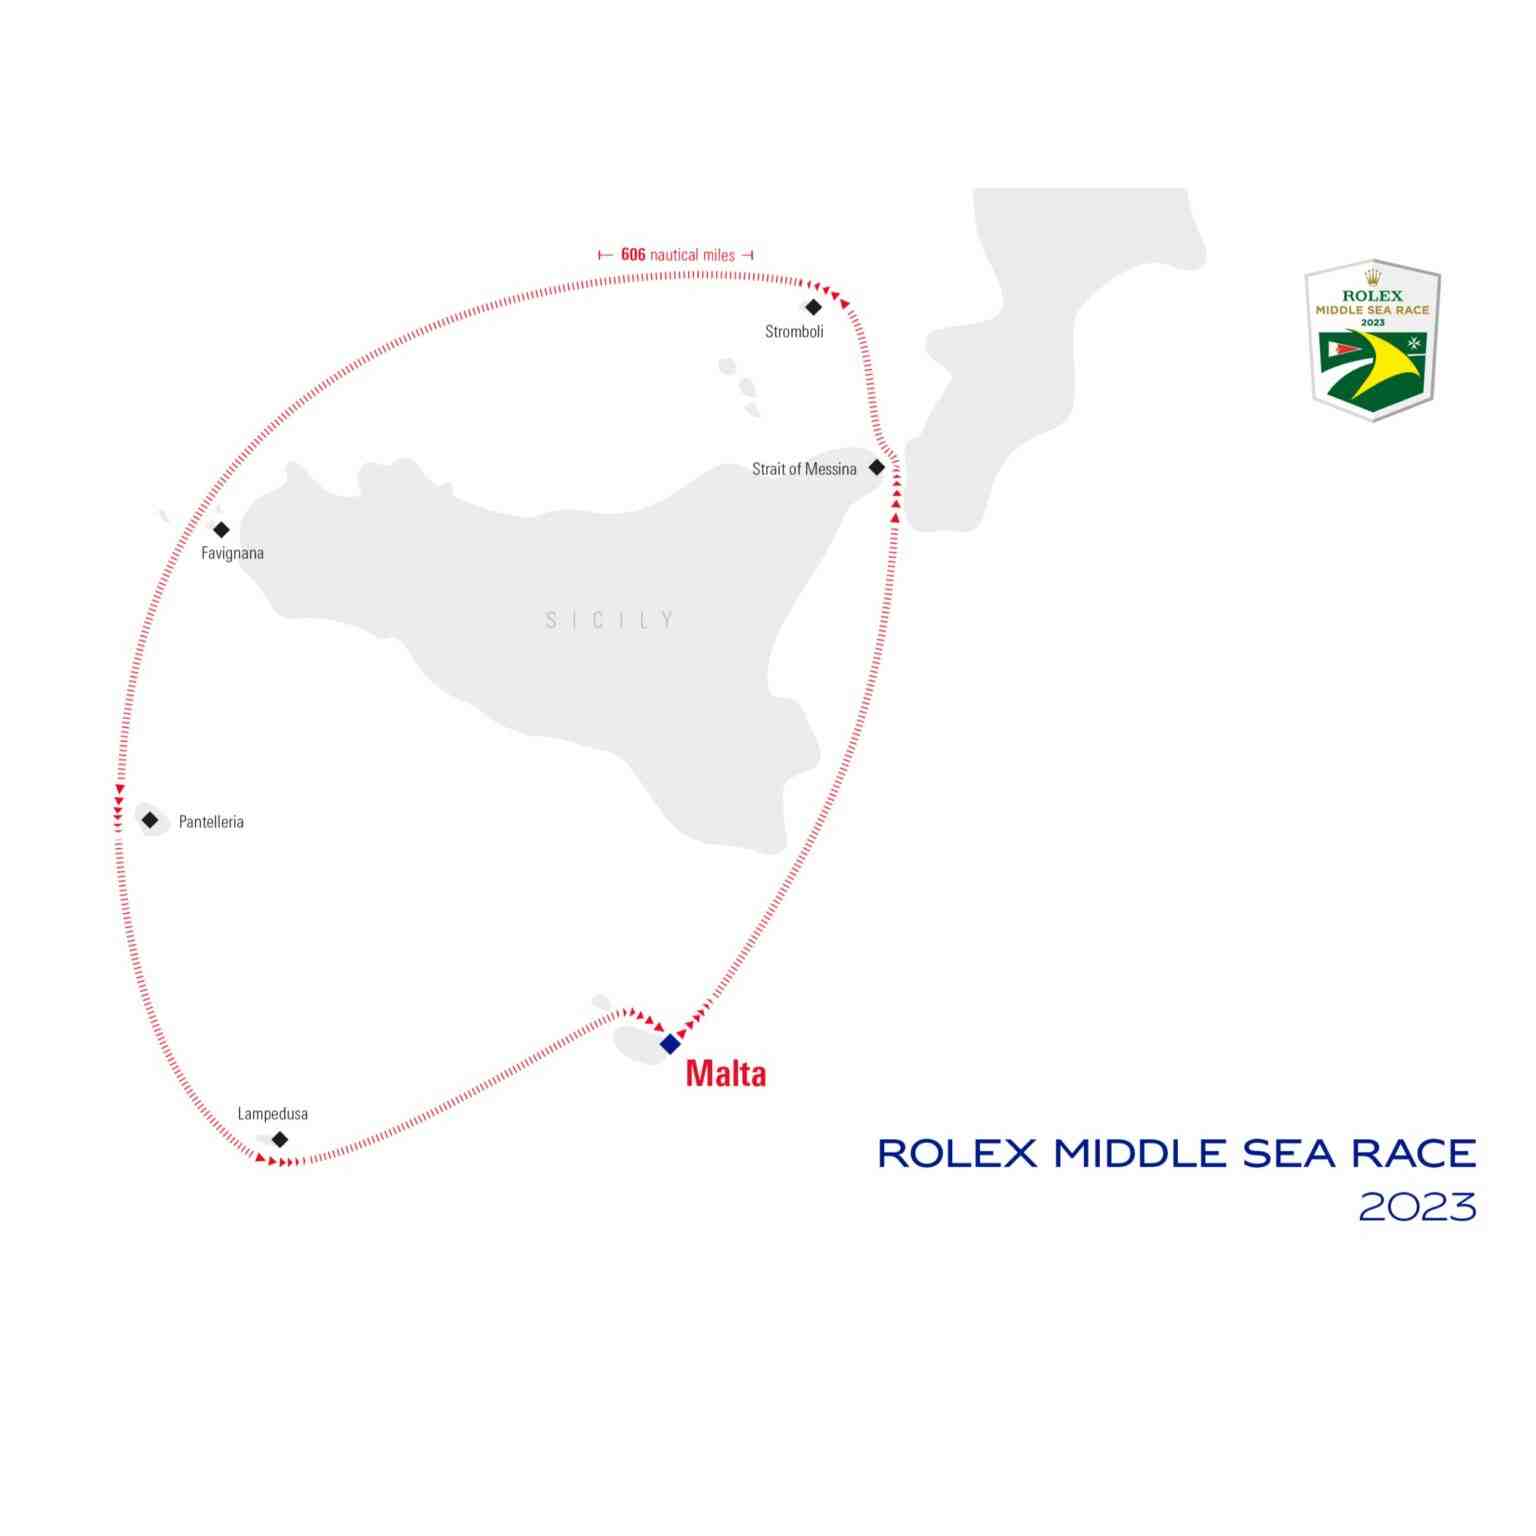 Rolex Middle Sea Race 2023 course